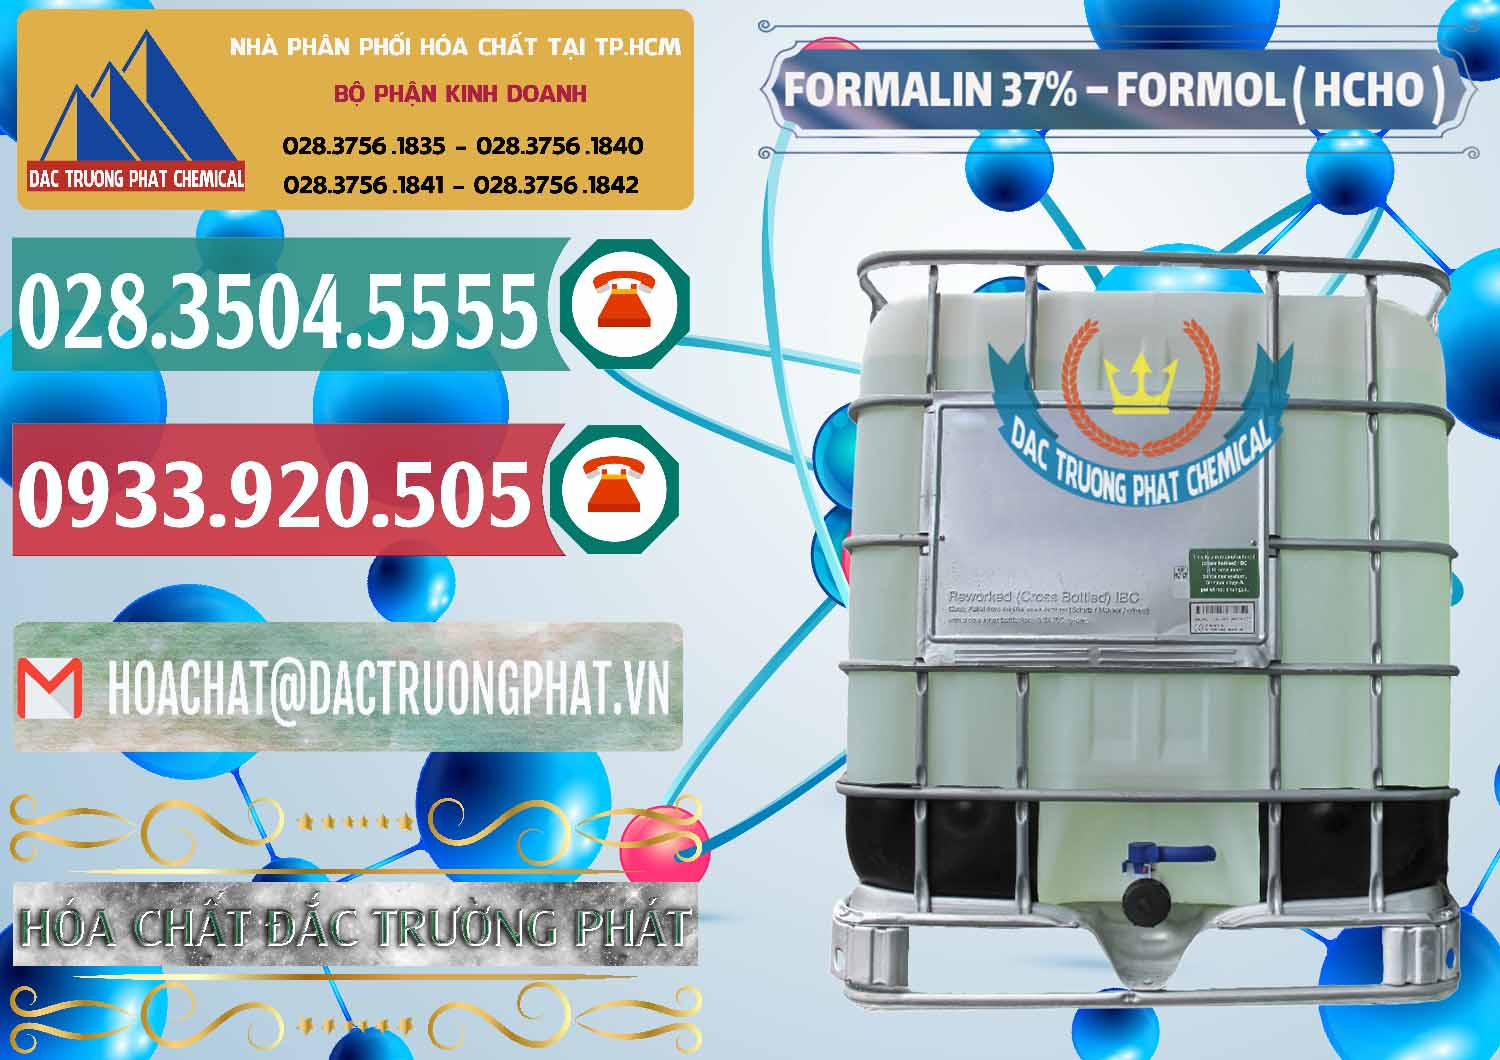 Chuyên kinh doanh & bán Formalin - Formol ( HCHO ) 37% Việt Nam - 0187 - Công ty cung cấp - kinh doanh hóa chất tại TP.HCM - muabanhoachat.vn